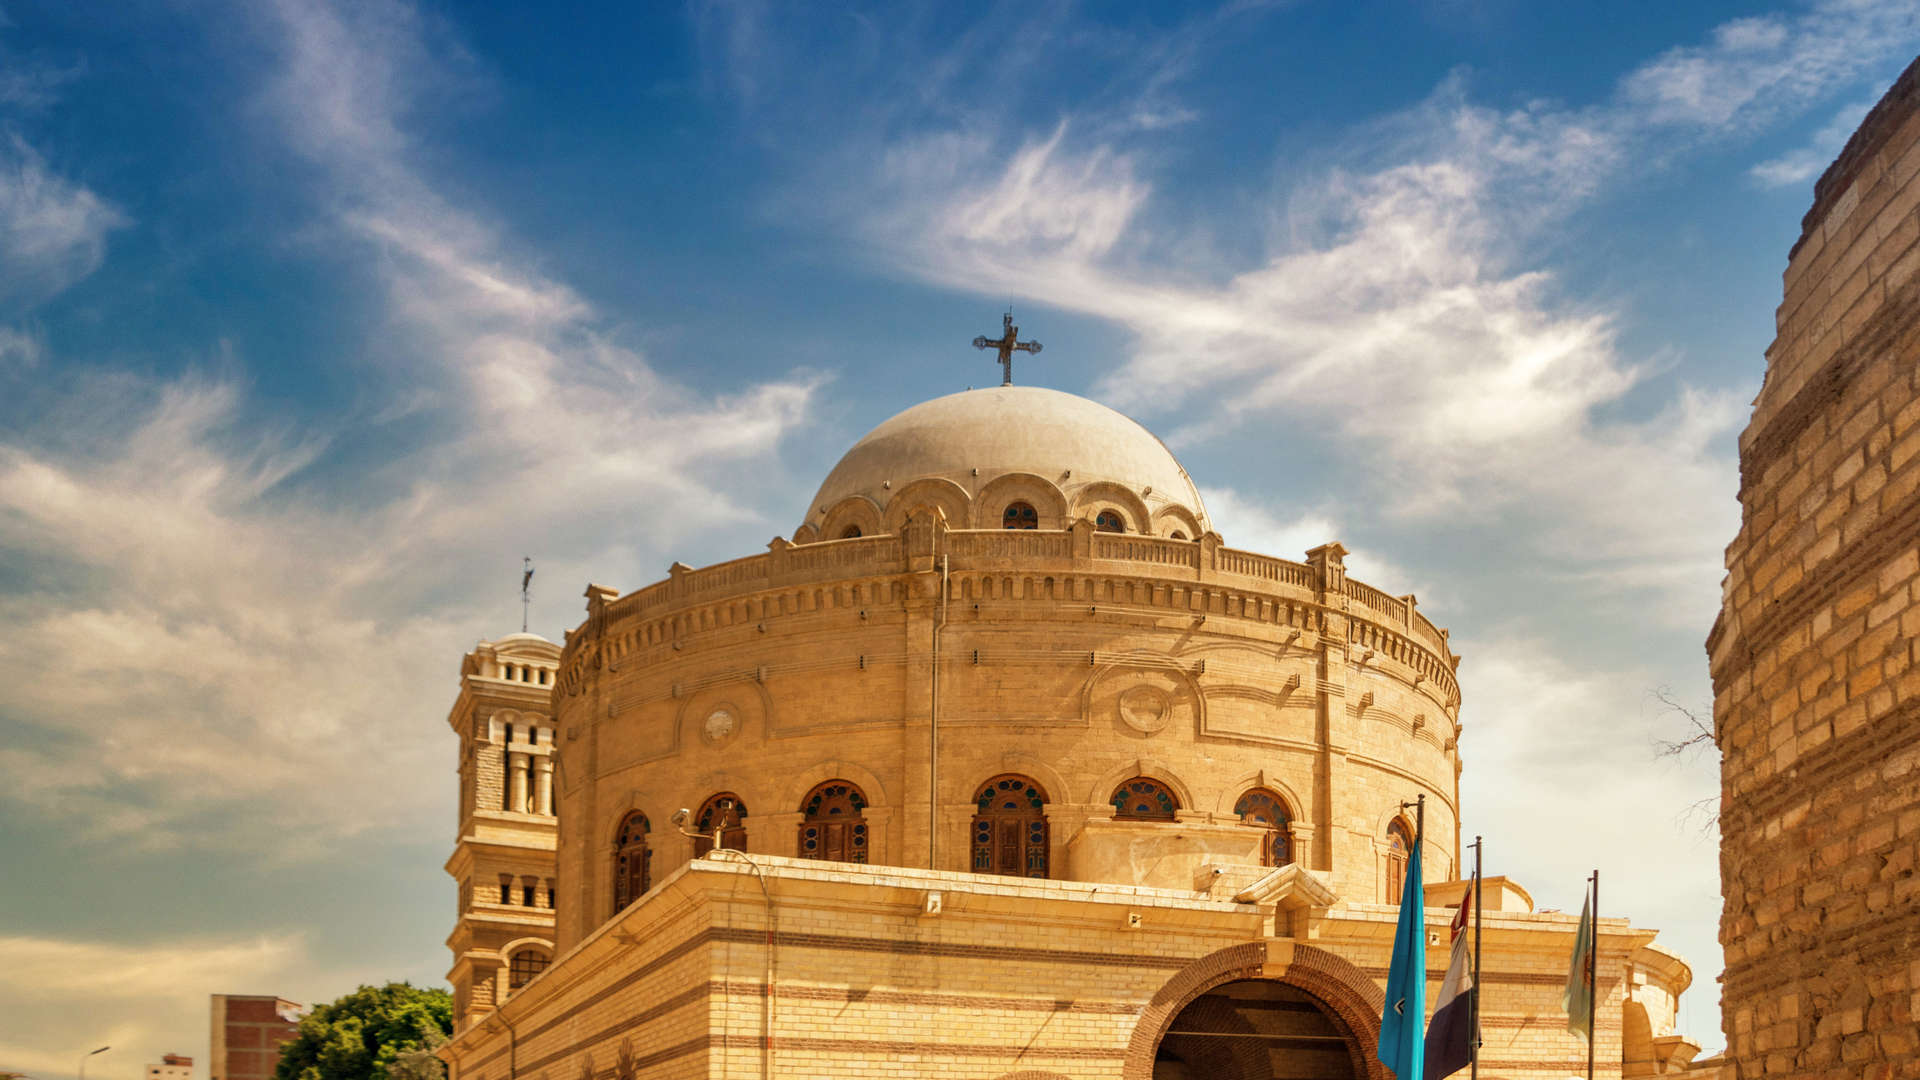 تقع كنيسة مارجرجس التي تعود إلى القرن العاشر في قلب القاهرة القديمة